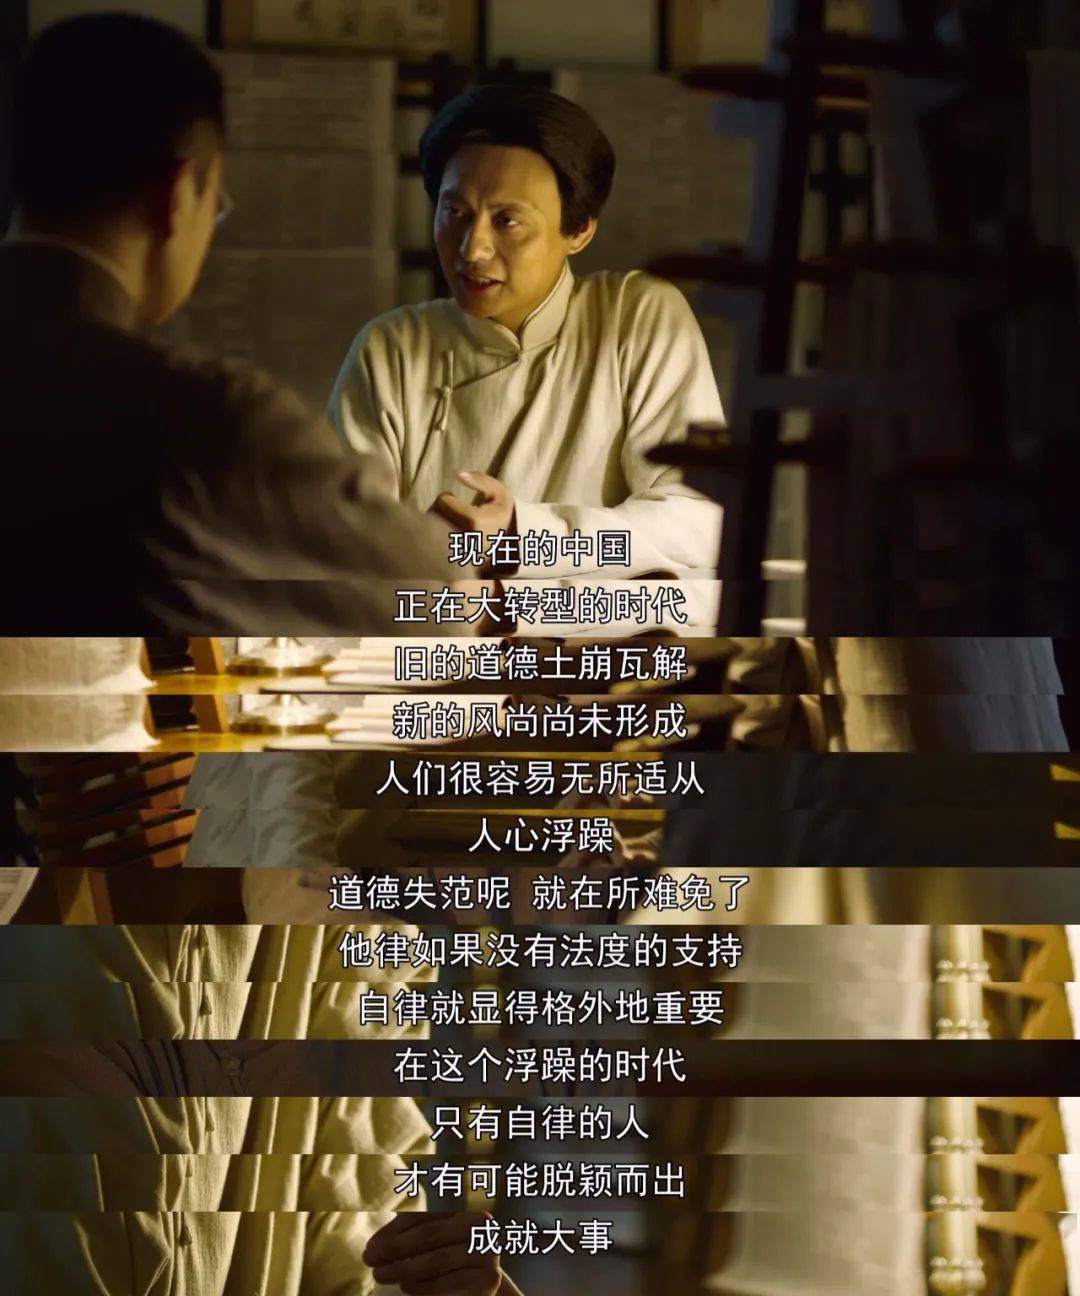 电视剧《 觉醒年代 》经典台词现在的中国,正在大转型的时代,旧的